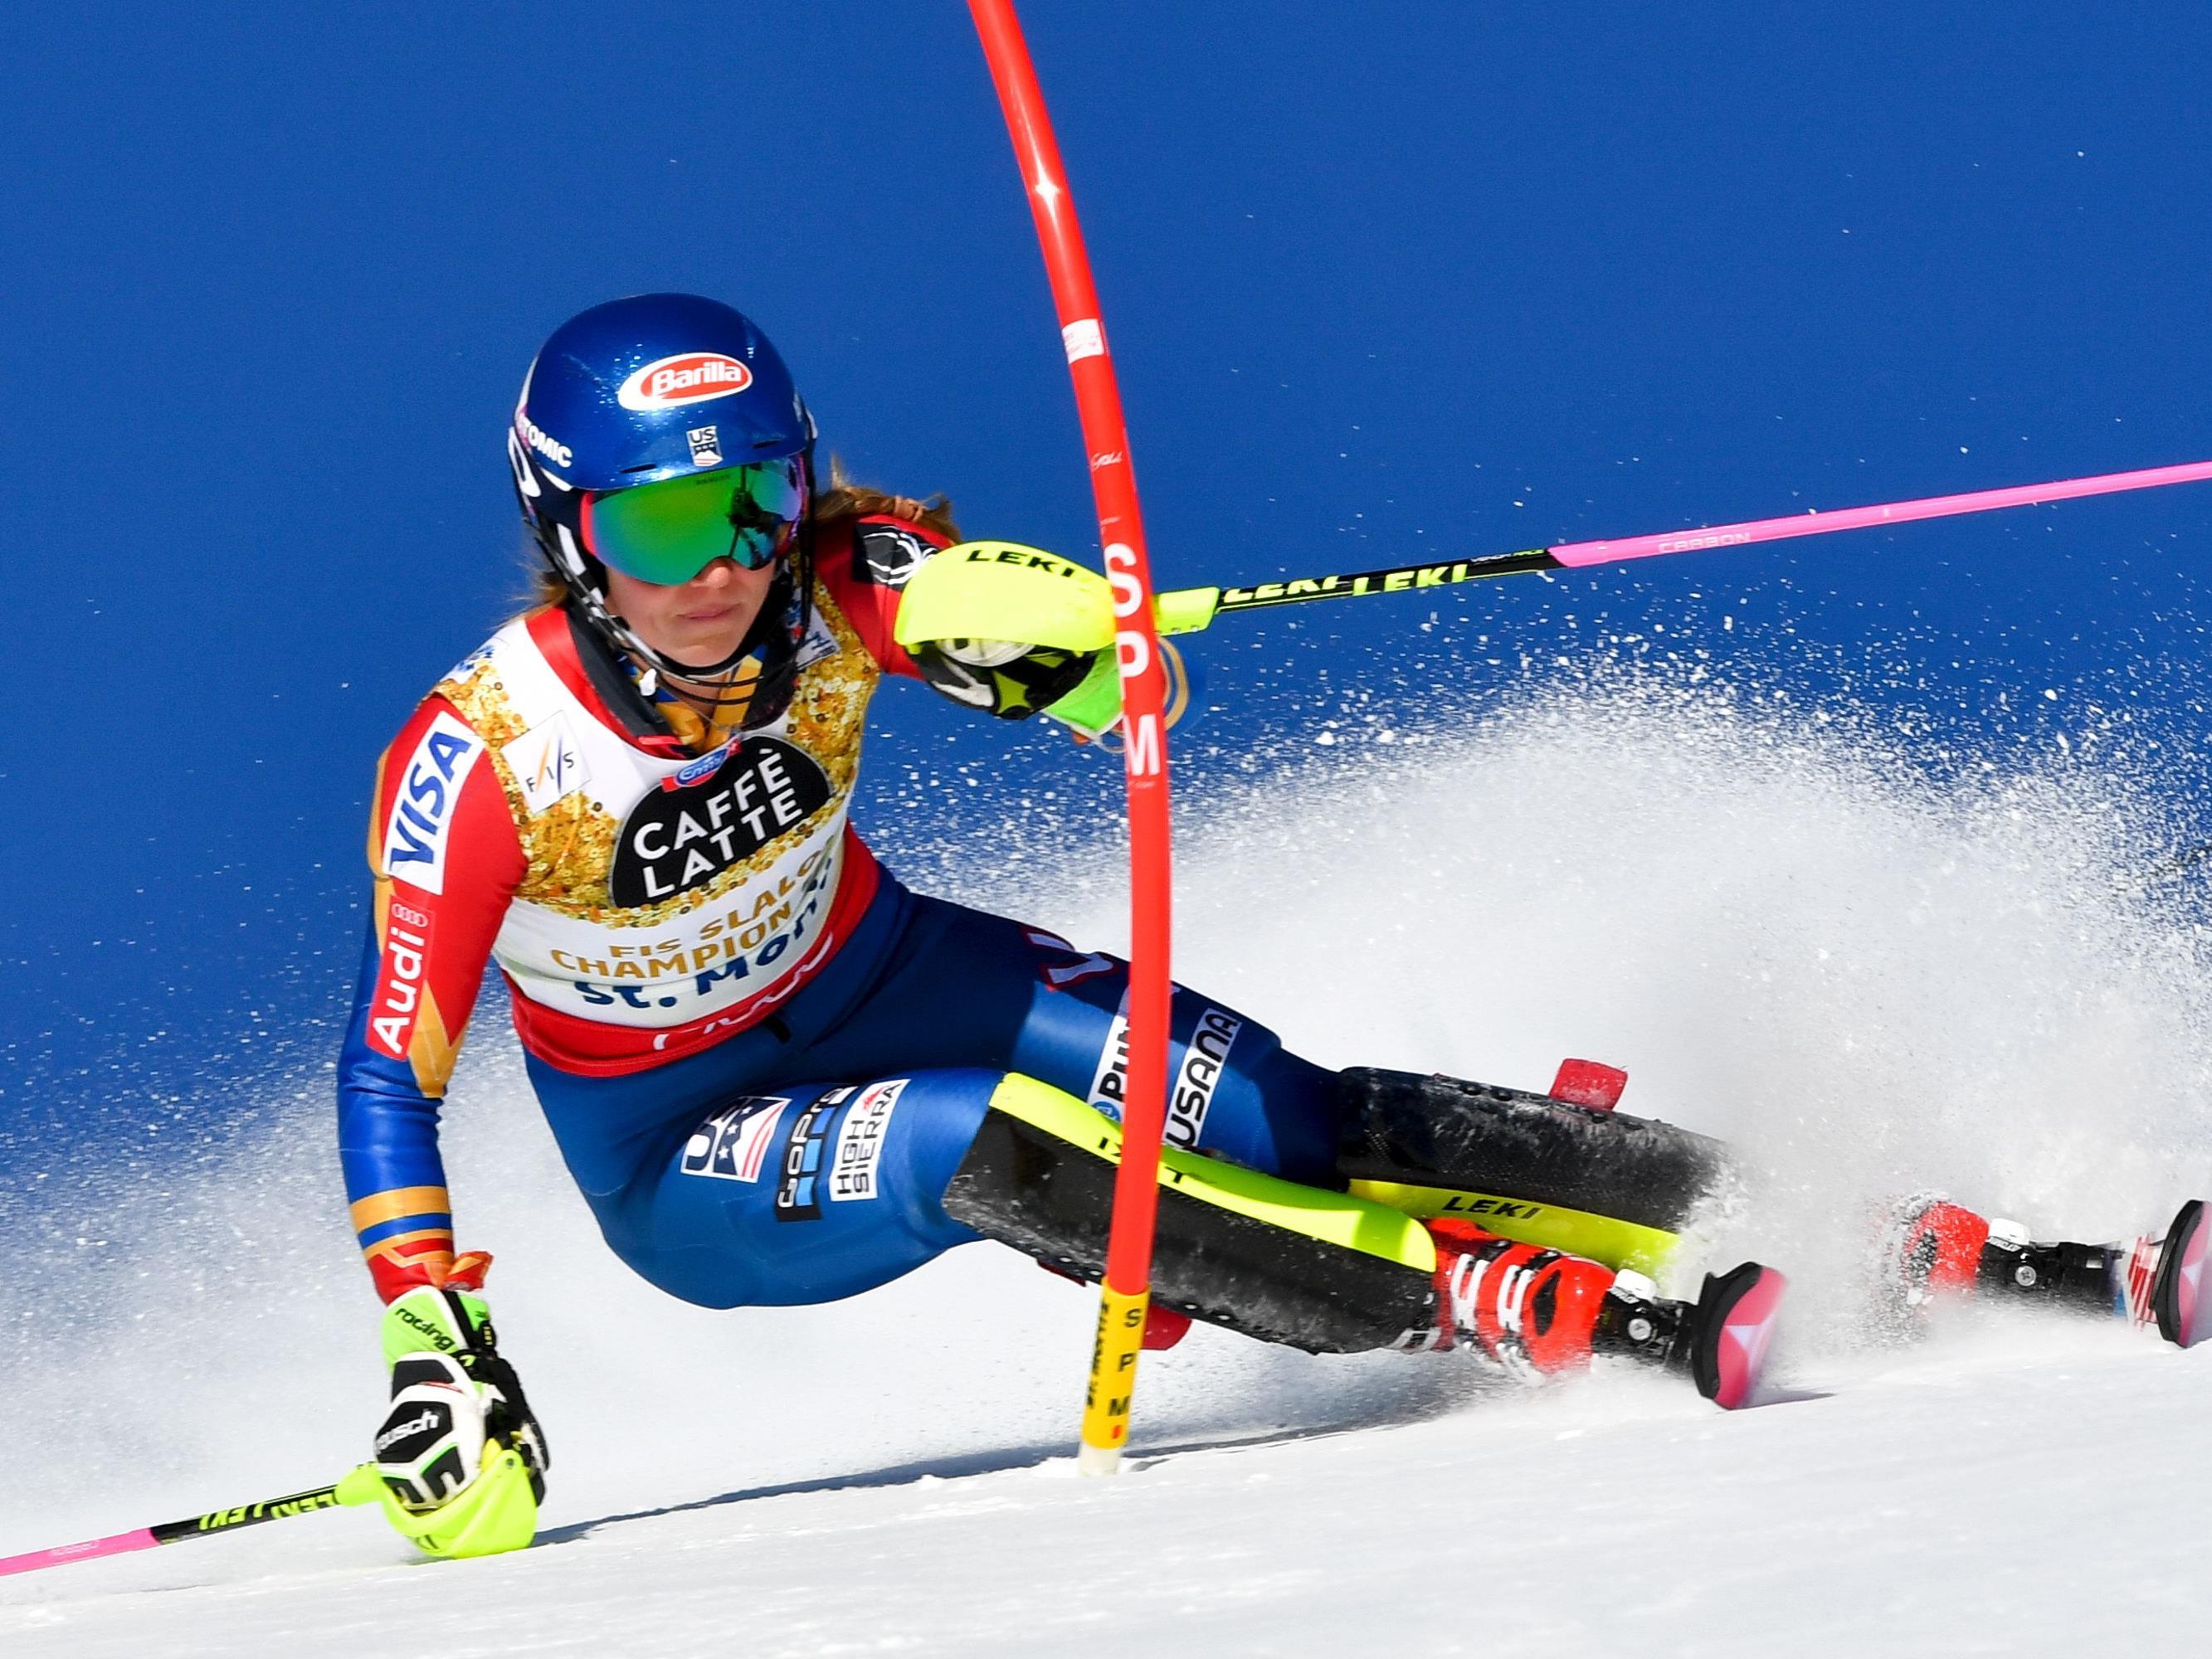 suite Slalom-Weltmeisterin geworden. Die 21-jährige Olympiasiegerin siegte zum Abschluss der Damen-Bewerbe in St. Moritz überlegen vor Kombinations-Weltmeisterin Wendy Holdener.